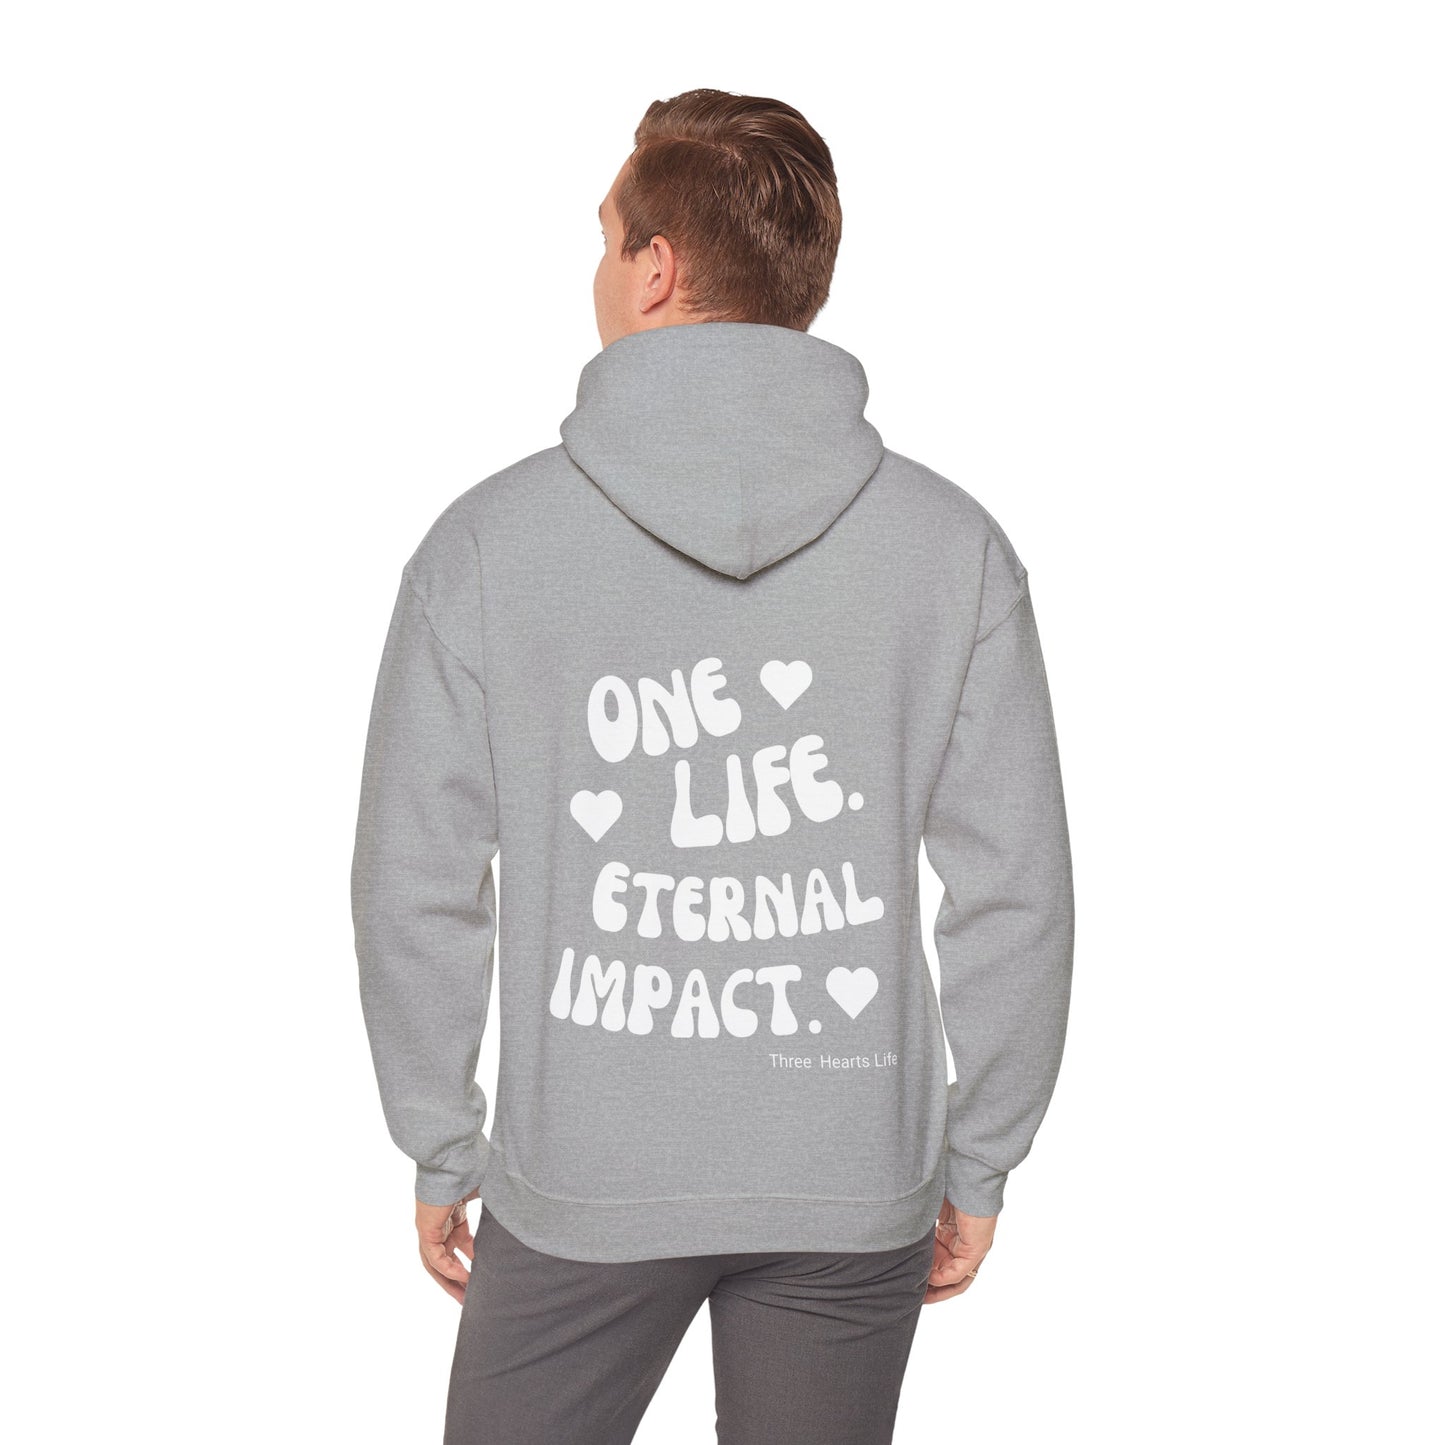 One Life. Eternal Impact. Hooded Sweatshirt